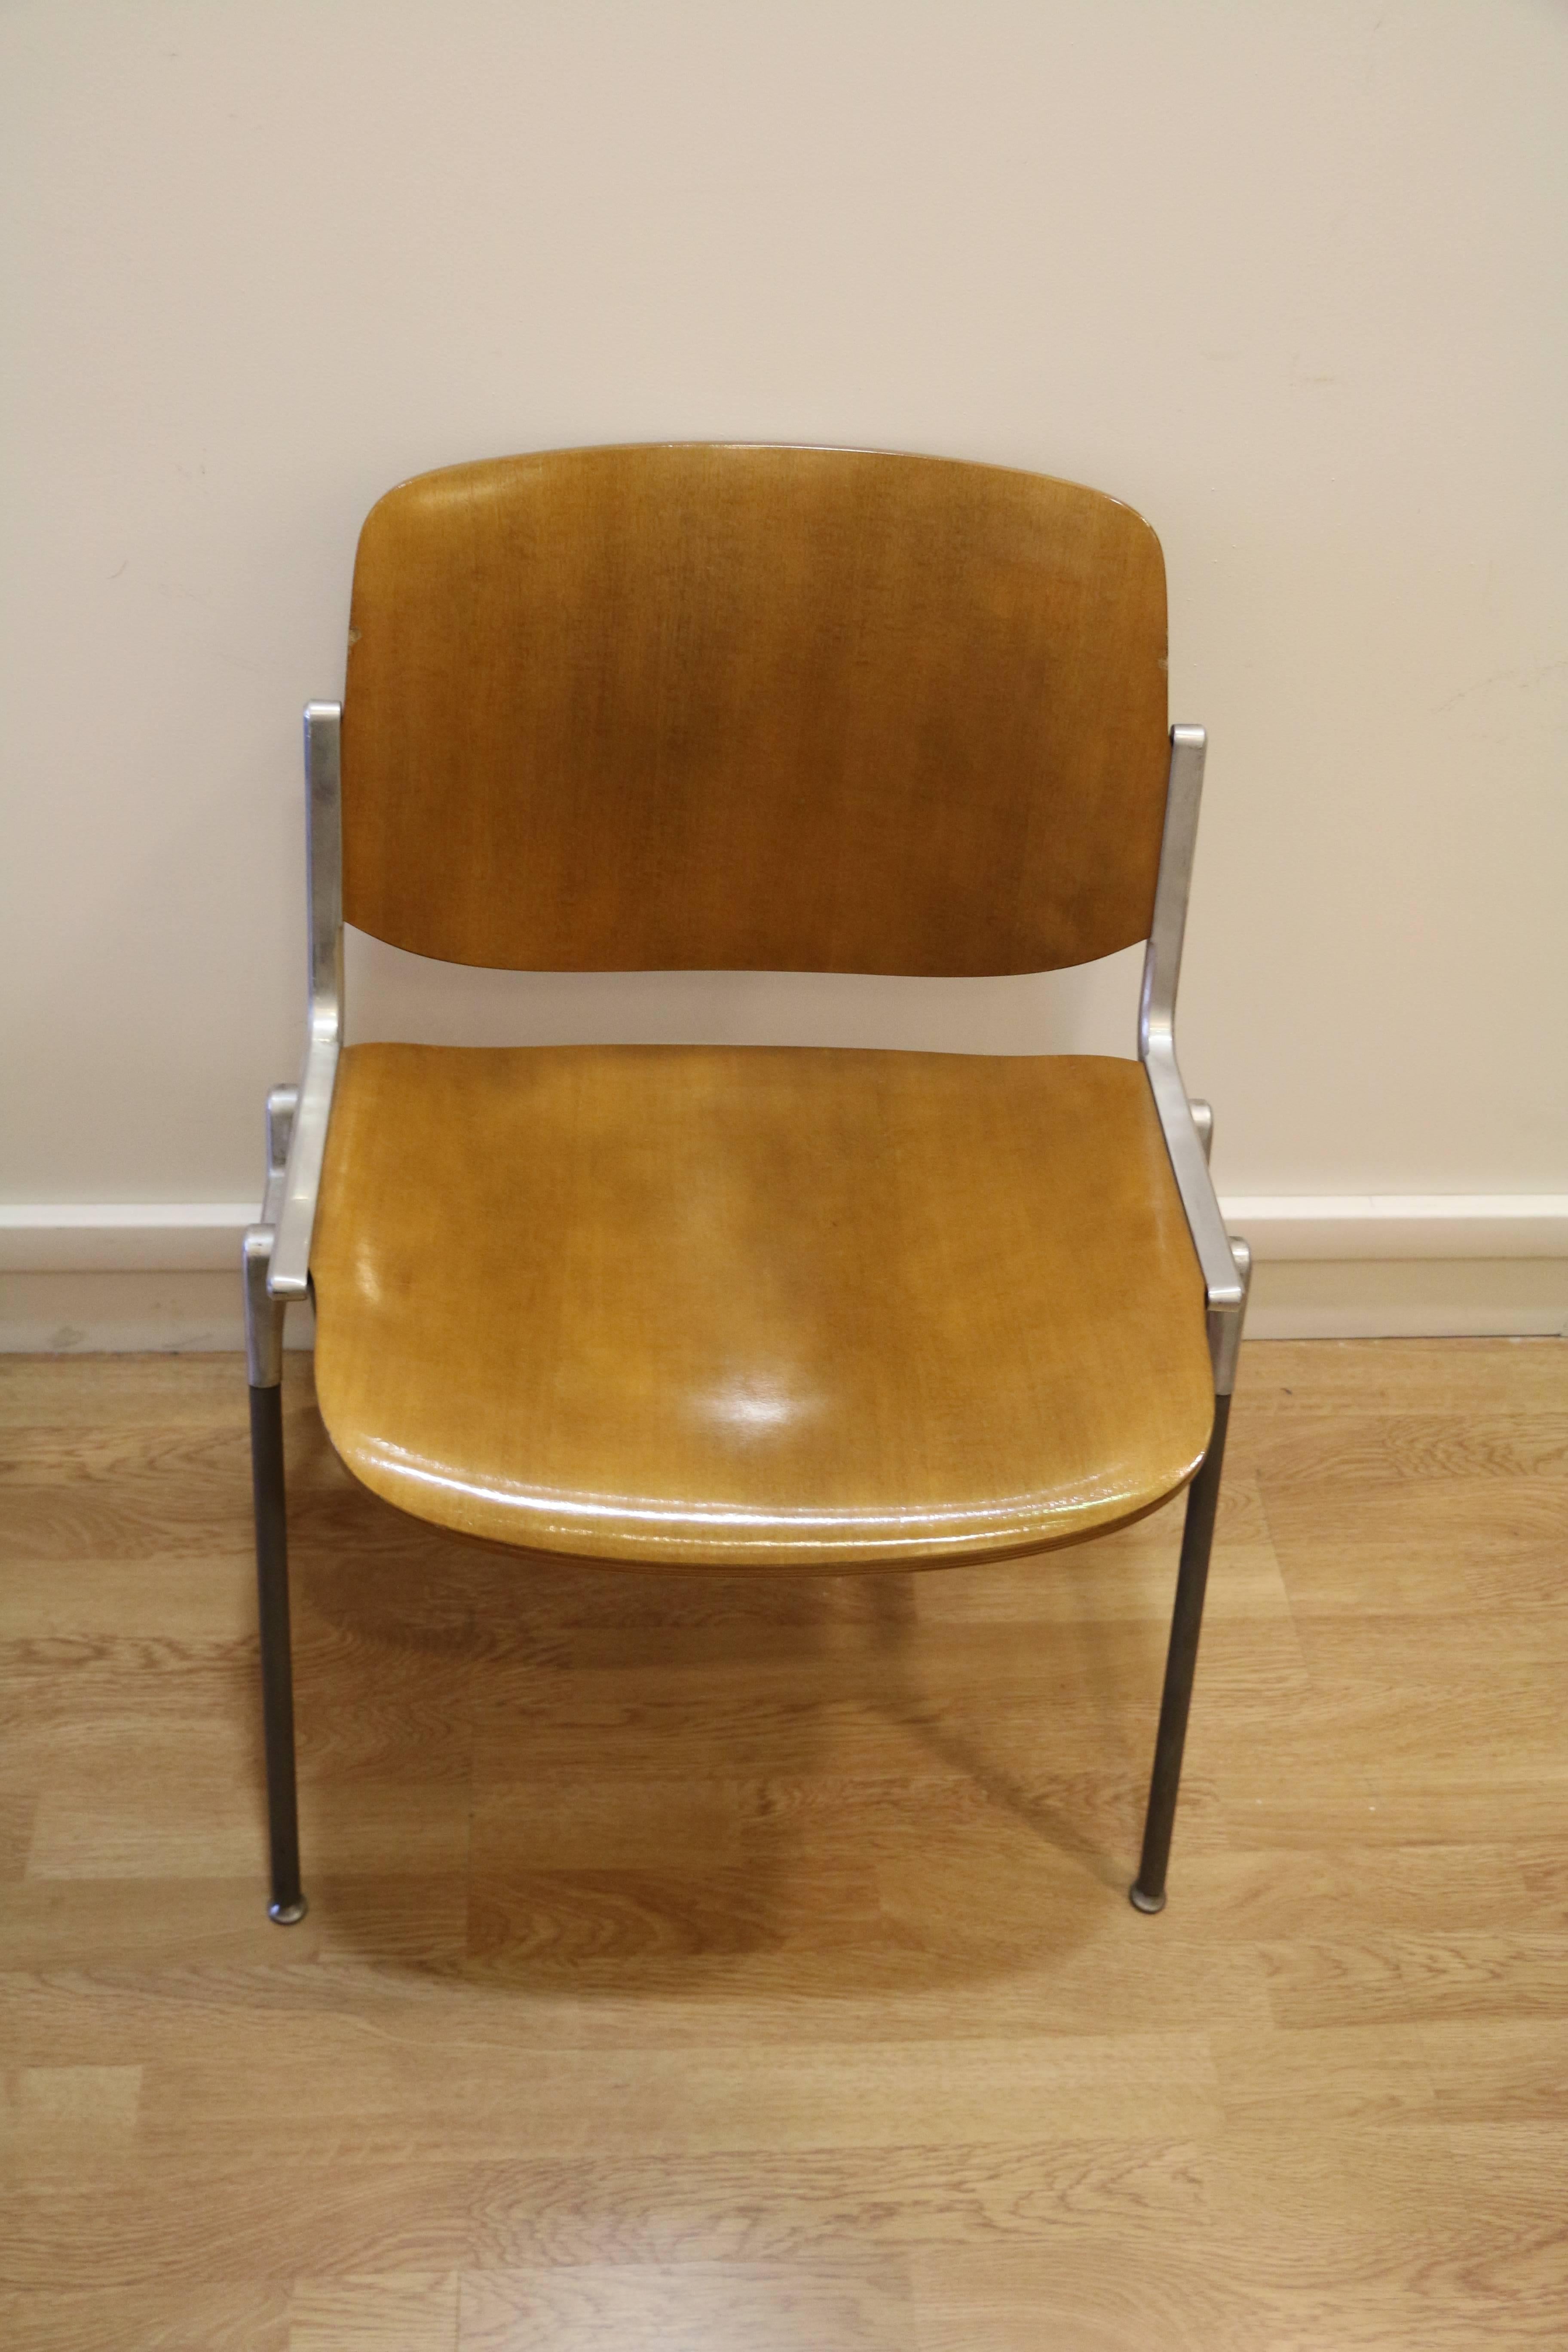 Ensemble de six chaises par Giancarlo Piretti, Modèle Nr 106 conçu en 1967, Italie, édition Castelli. Ce modèle n'est plus fabriqué. 
Dossier et assise de la chaise en contreplaqué thermoformé/moulé. Le placage a été restauré. Très belle couleur